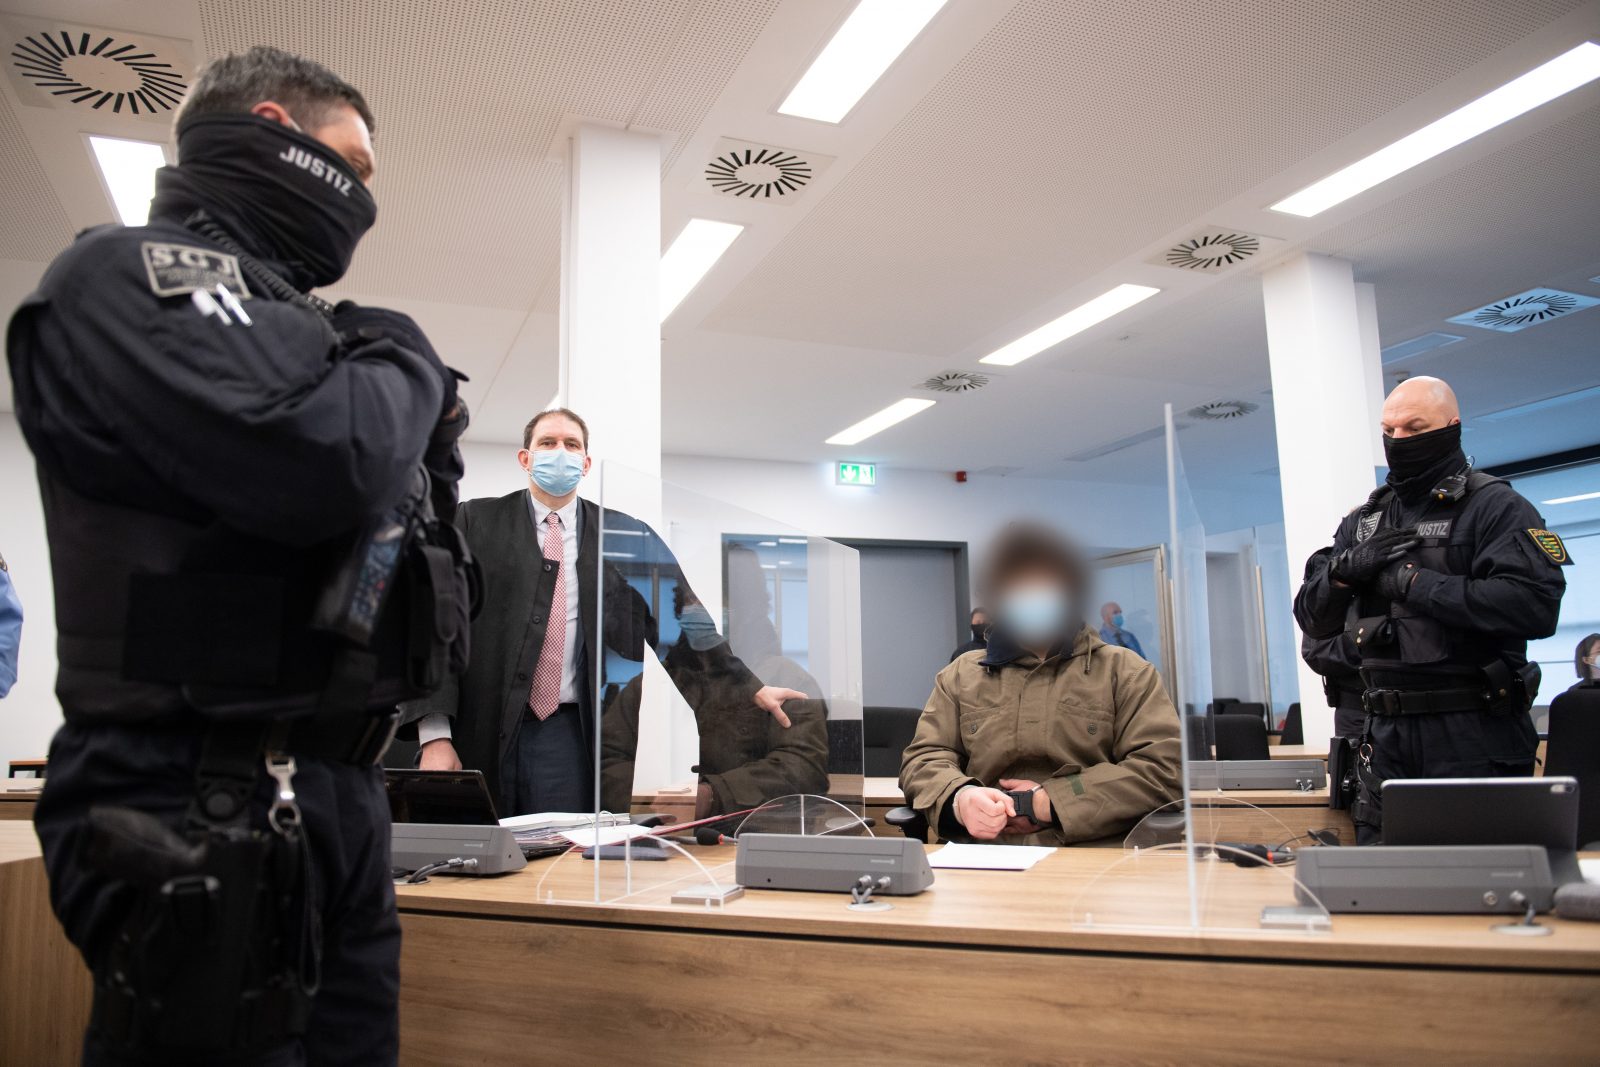 Polizisten bewachen den angeklagten Syrer im Gerichtssaal (Archivbild) Foto: picture alliance/dpa/dpa-Zentralbild/POOL | Sebastian Kahnert